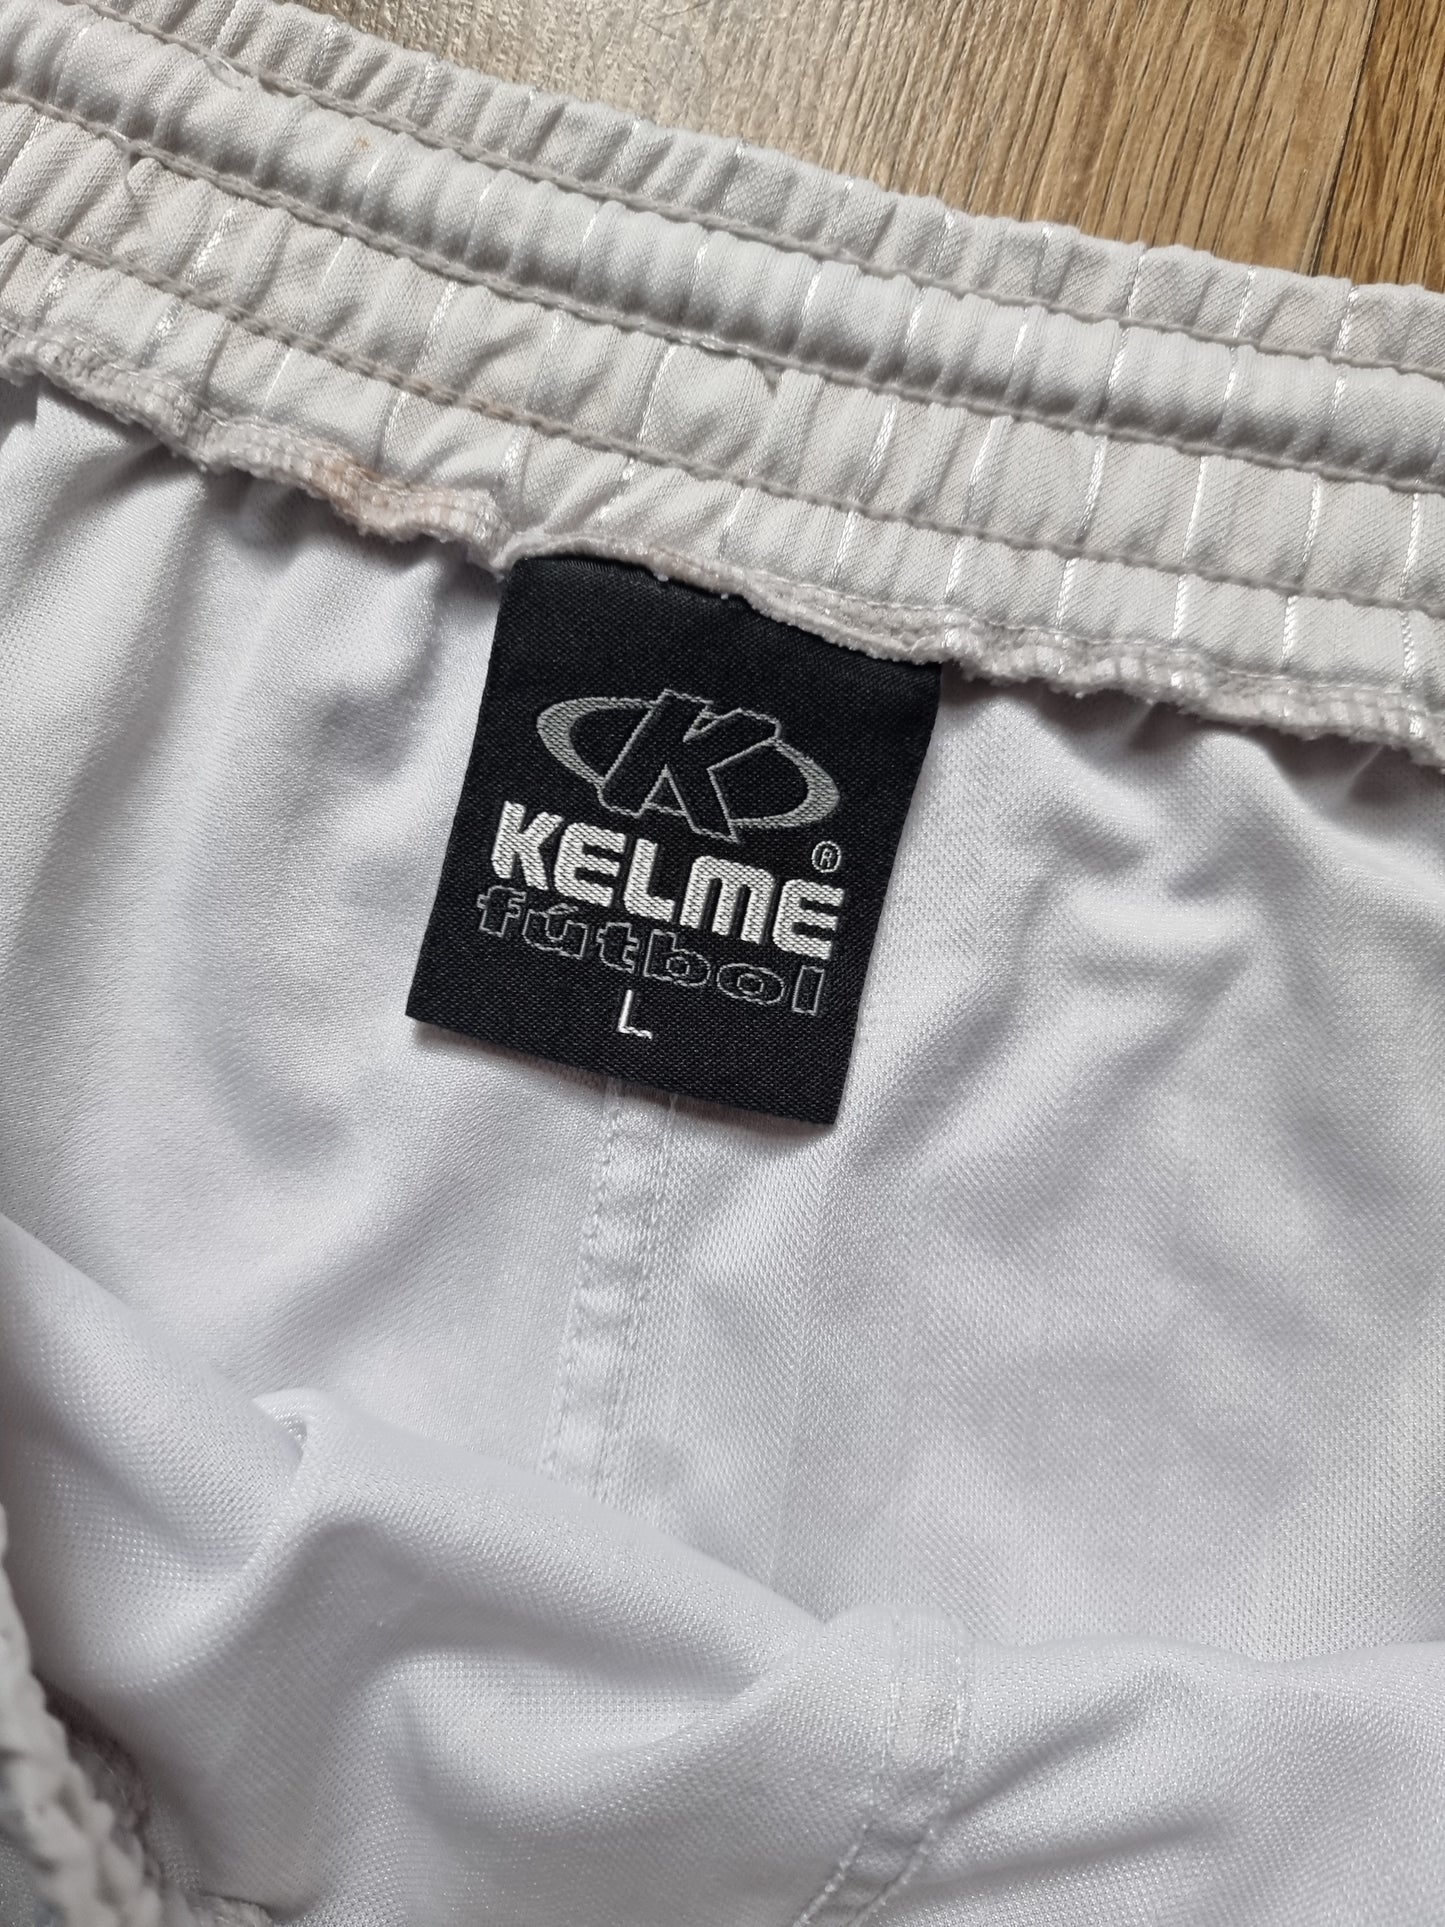 Kelme Venezia 01/02 Away Shorts Large